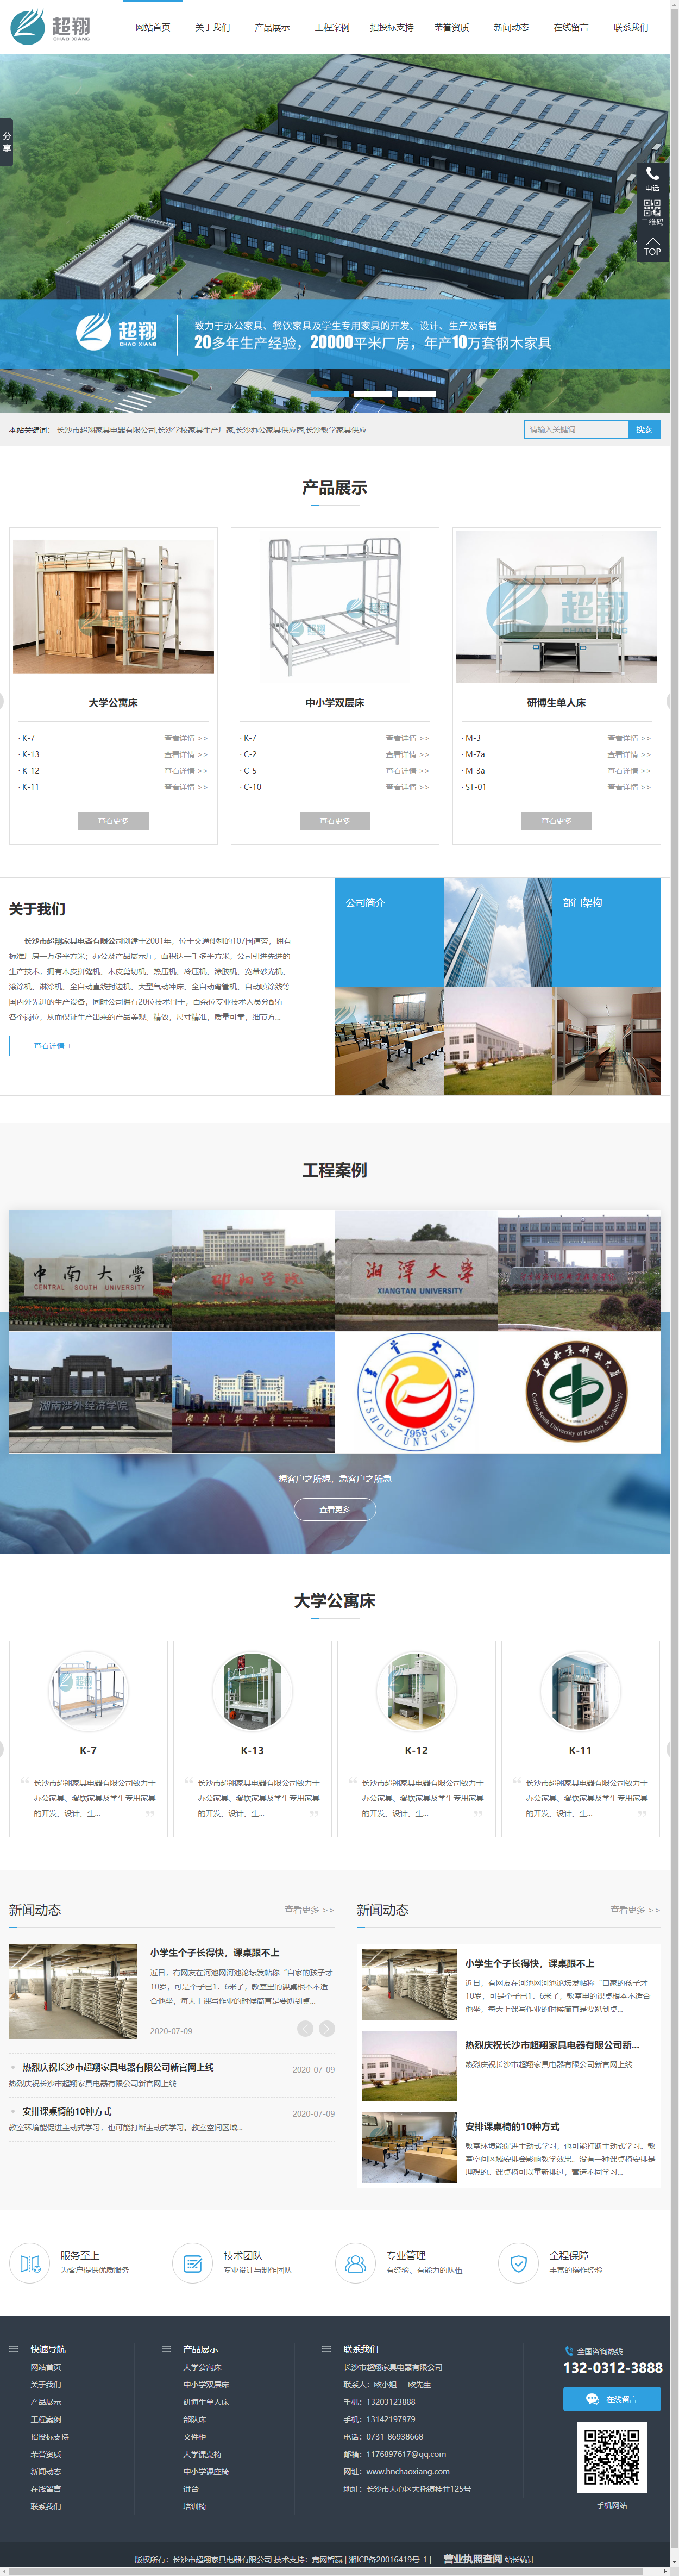 长沙市超翔家具电器有限公司网站案例